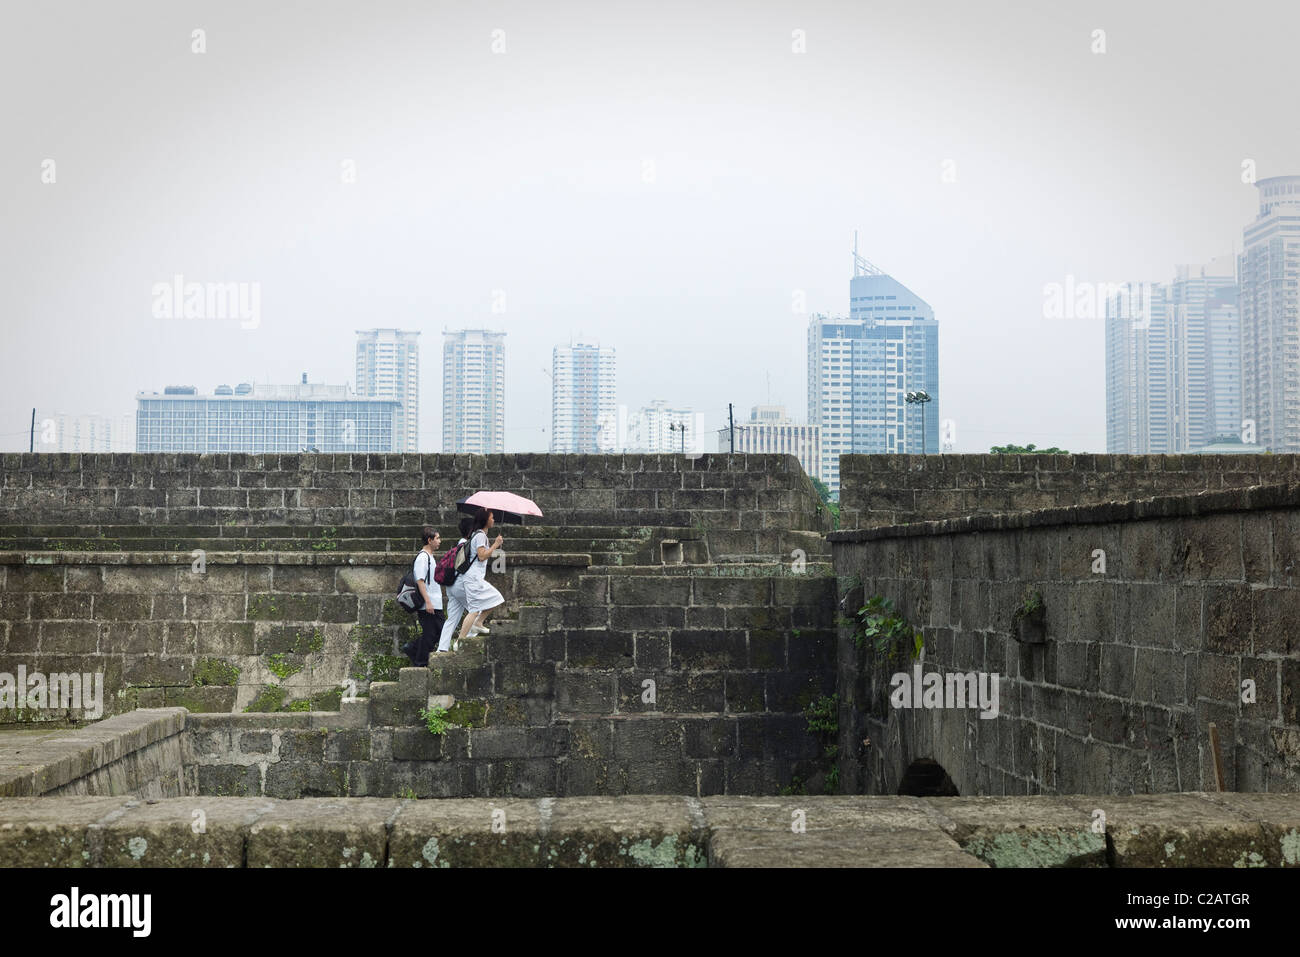 Filippine, Luzon, Manila, i pedoni a camminare su gradini dello skyline della città in background Foto Stock